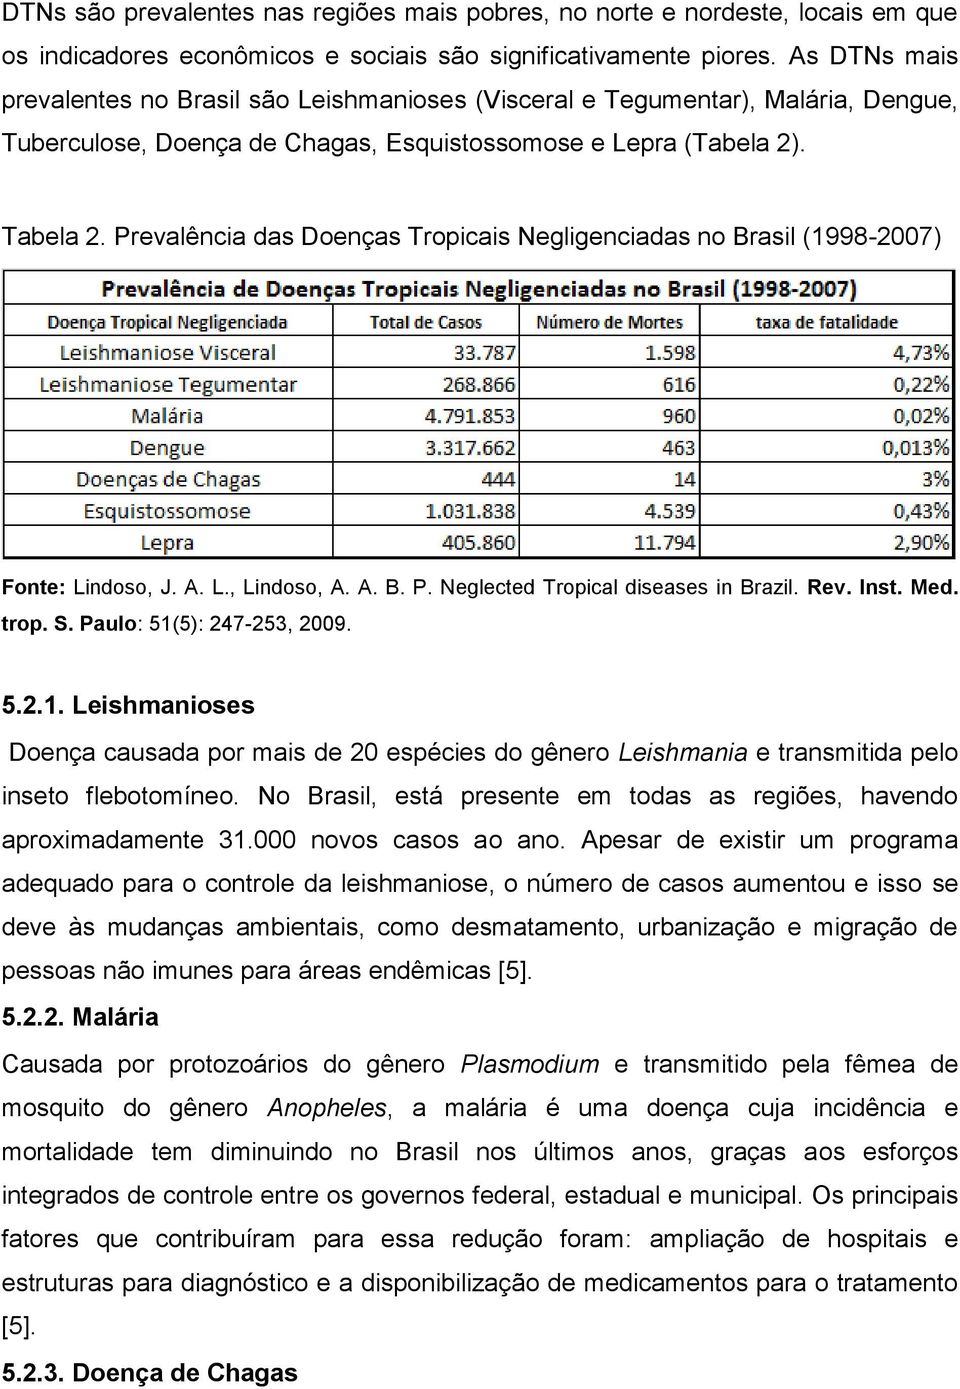 Prevalência das Doenças Tropicais Negligenciadas no Brasil (1998-2007) Fonte: Lindoso, J. A. L., Lindoso, A. A. B. P. Neglected Tropical diseases in Brazil. Rev. Inst. Med. trop. S.